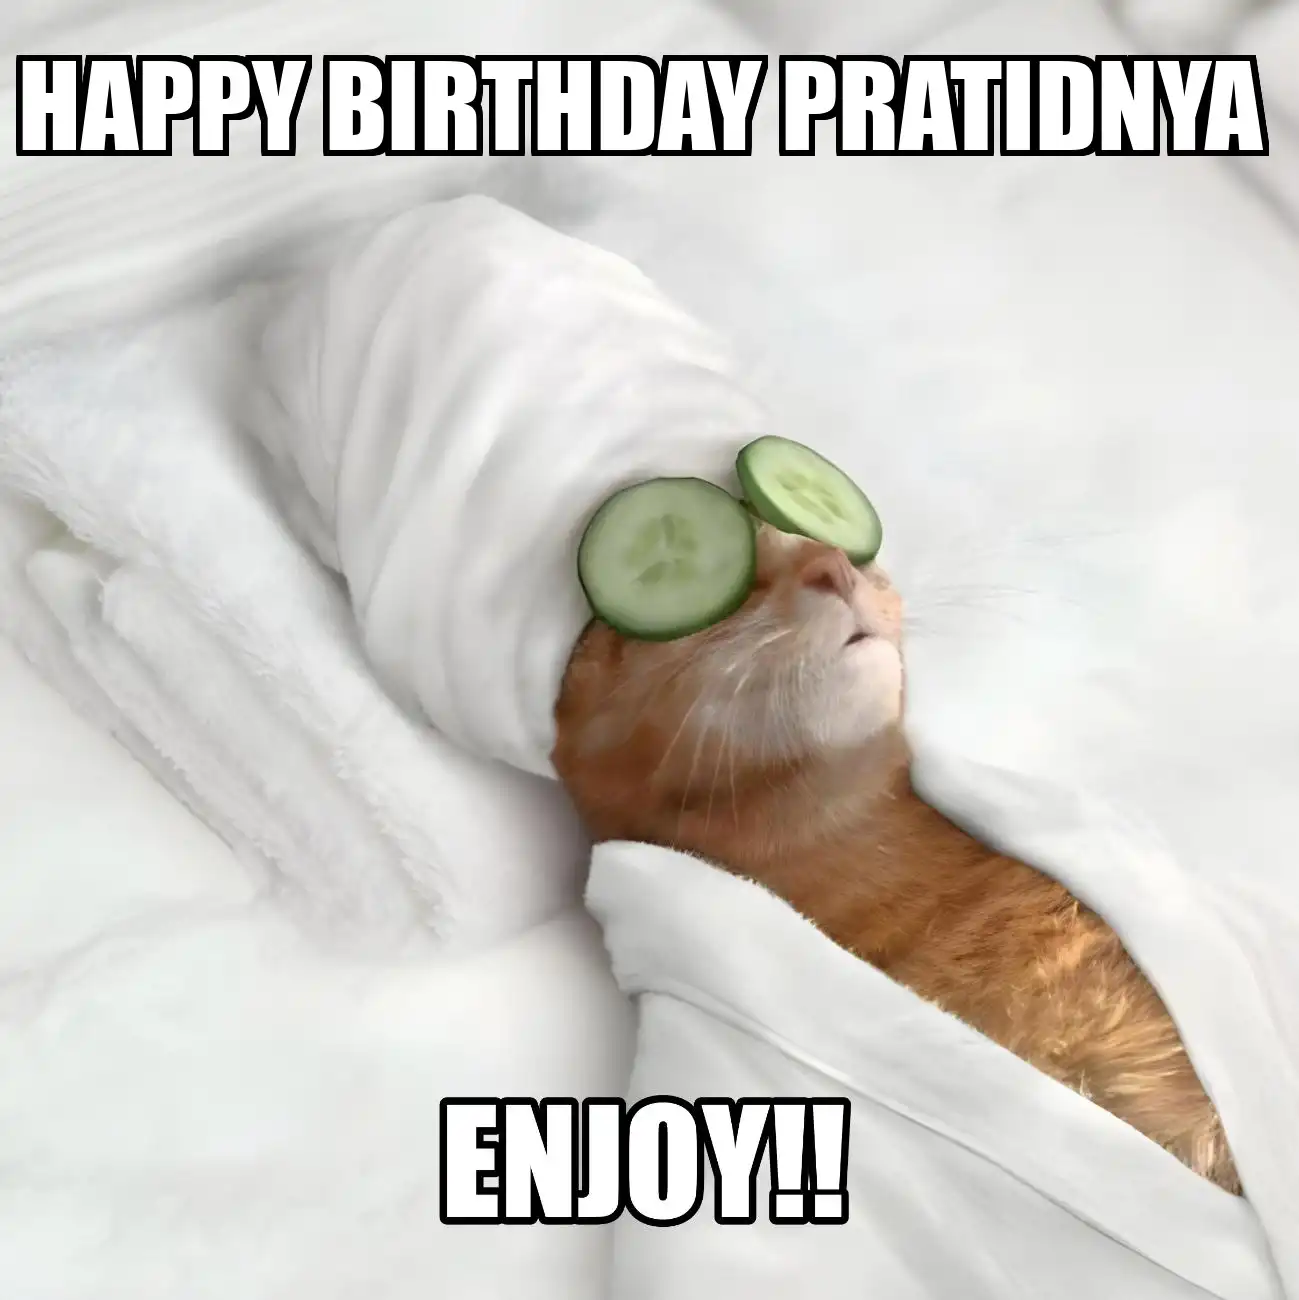 Happy Birthday Pratidnya Enjoy Cat Meme